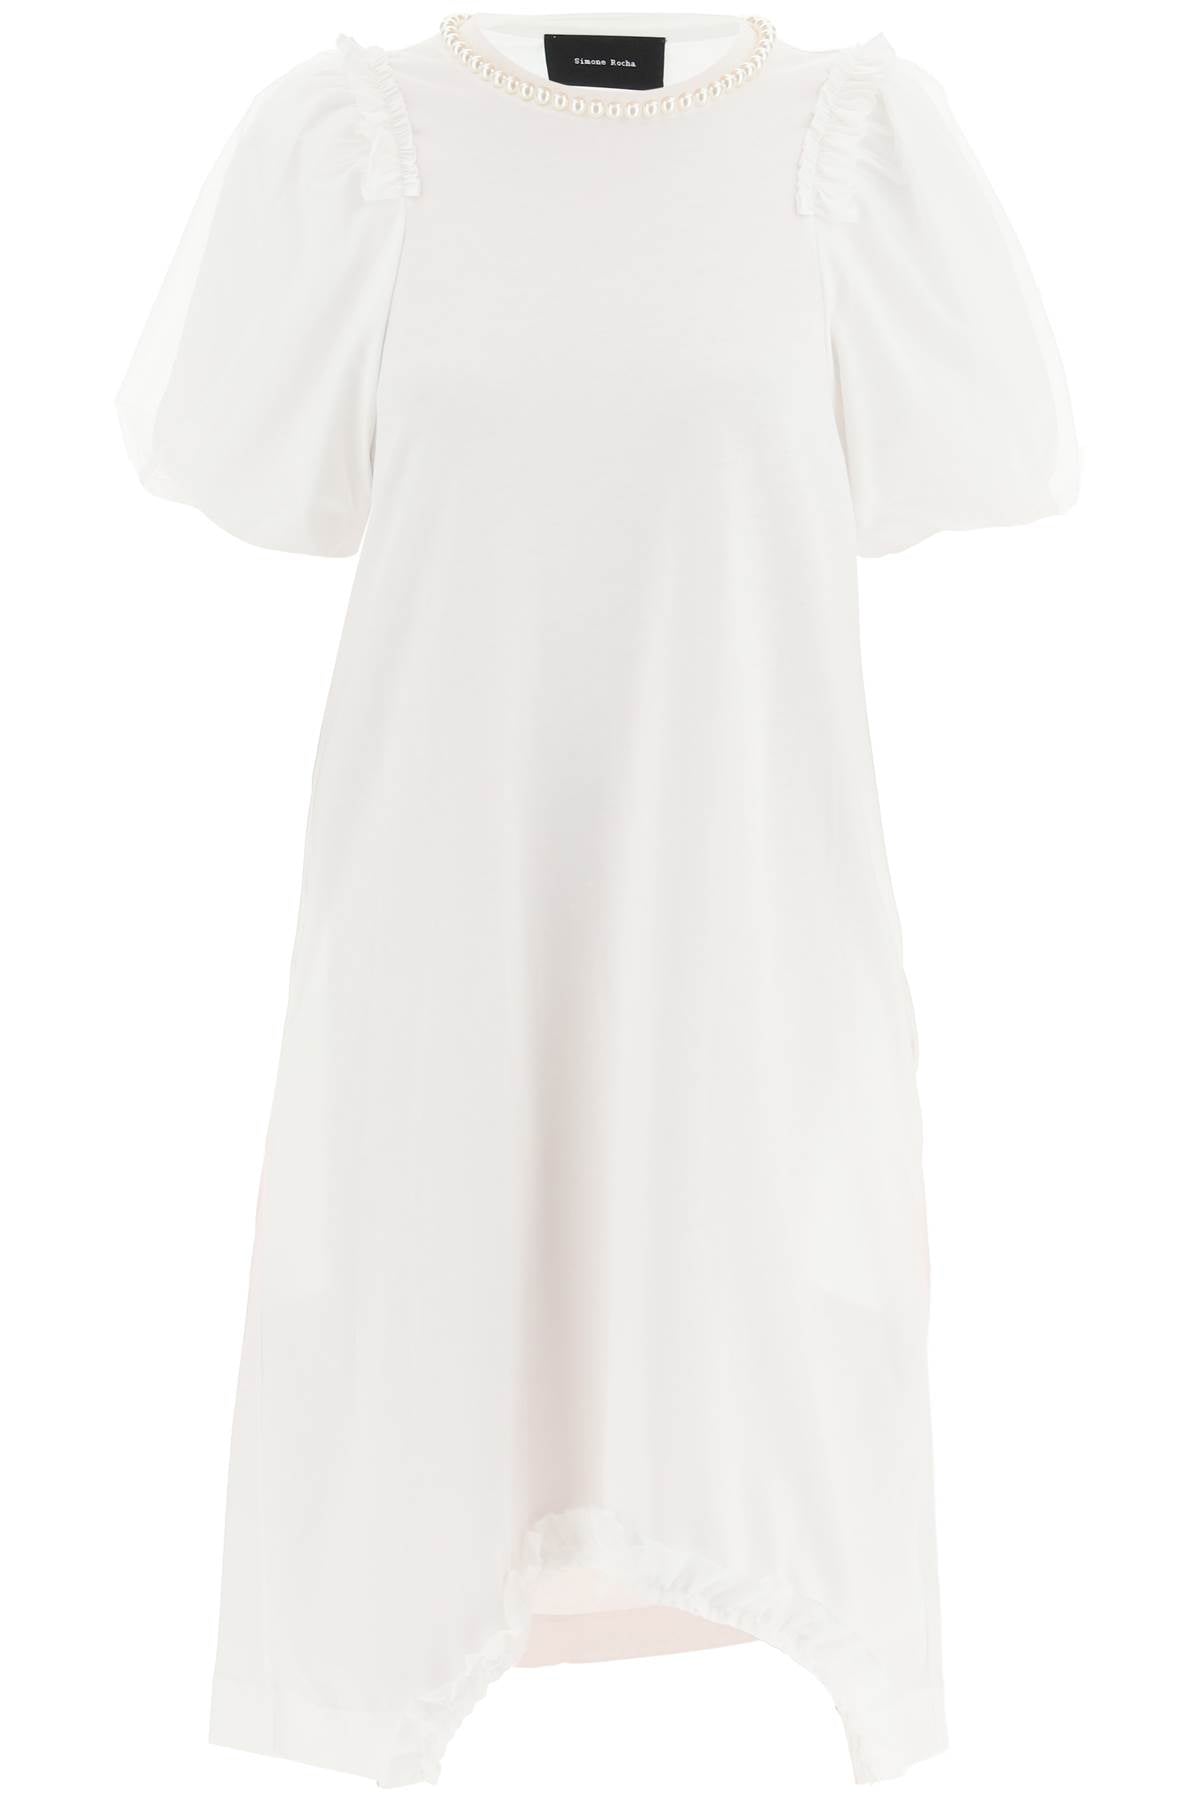 白色膝長T恤連身裙，配有紗袖和珍珠點綴，適合女性